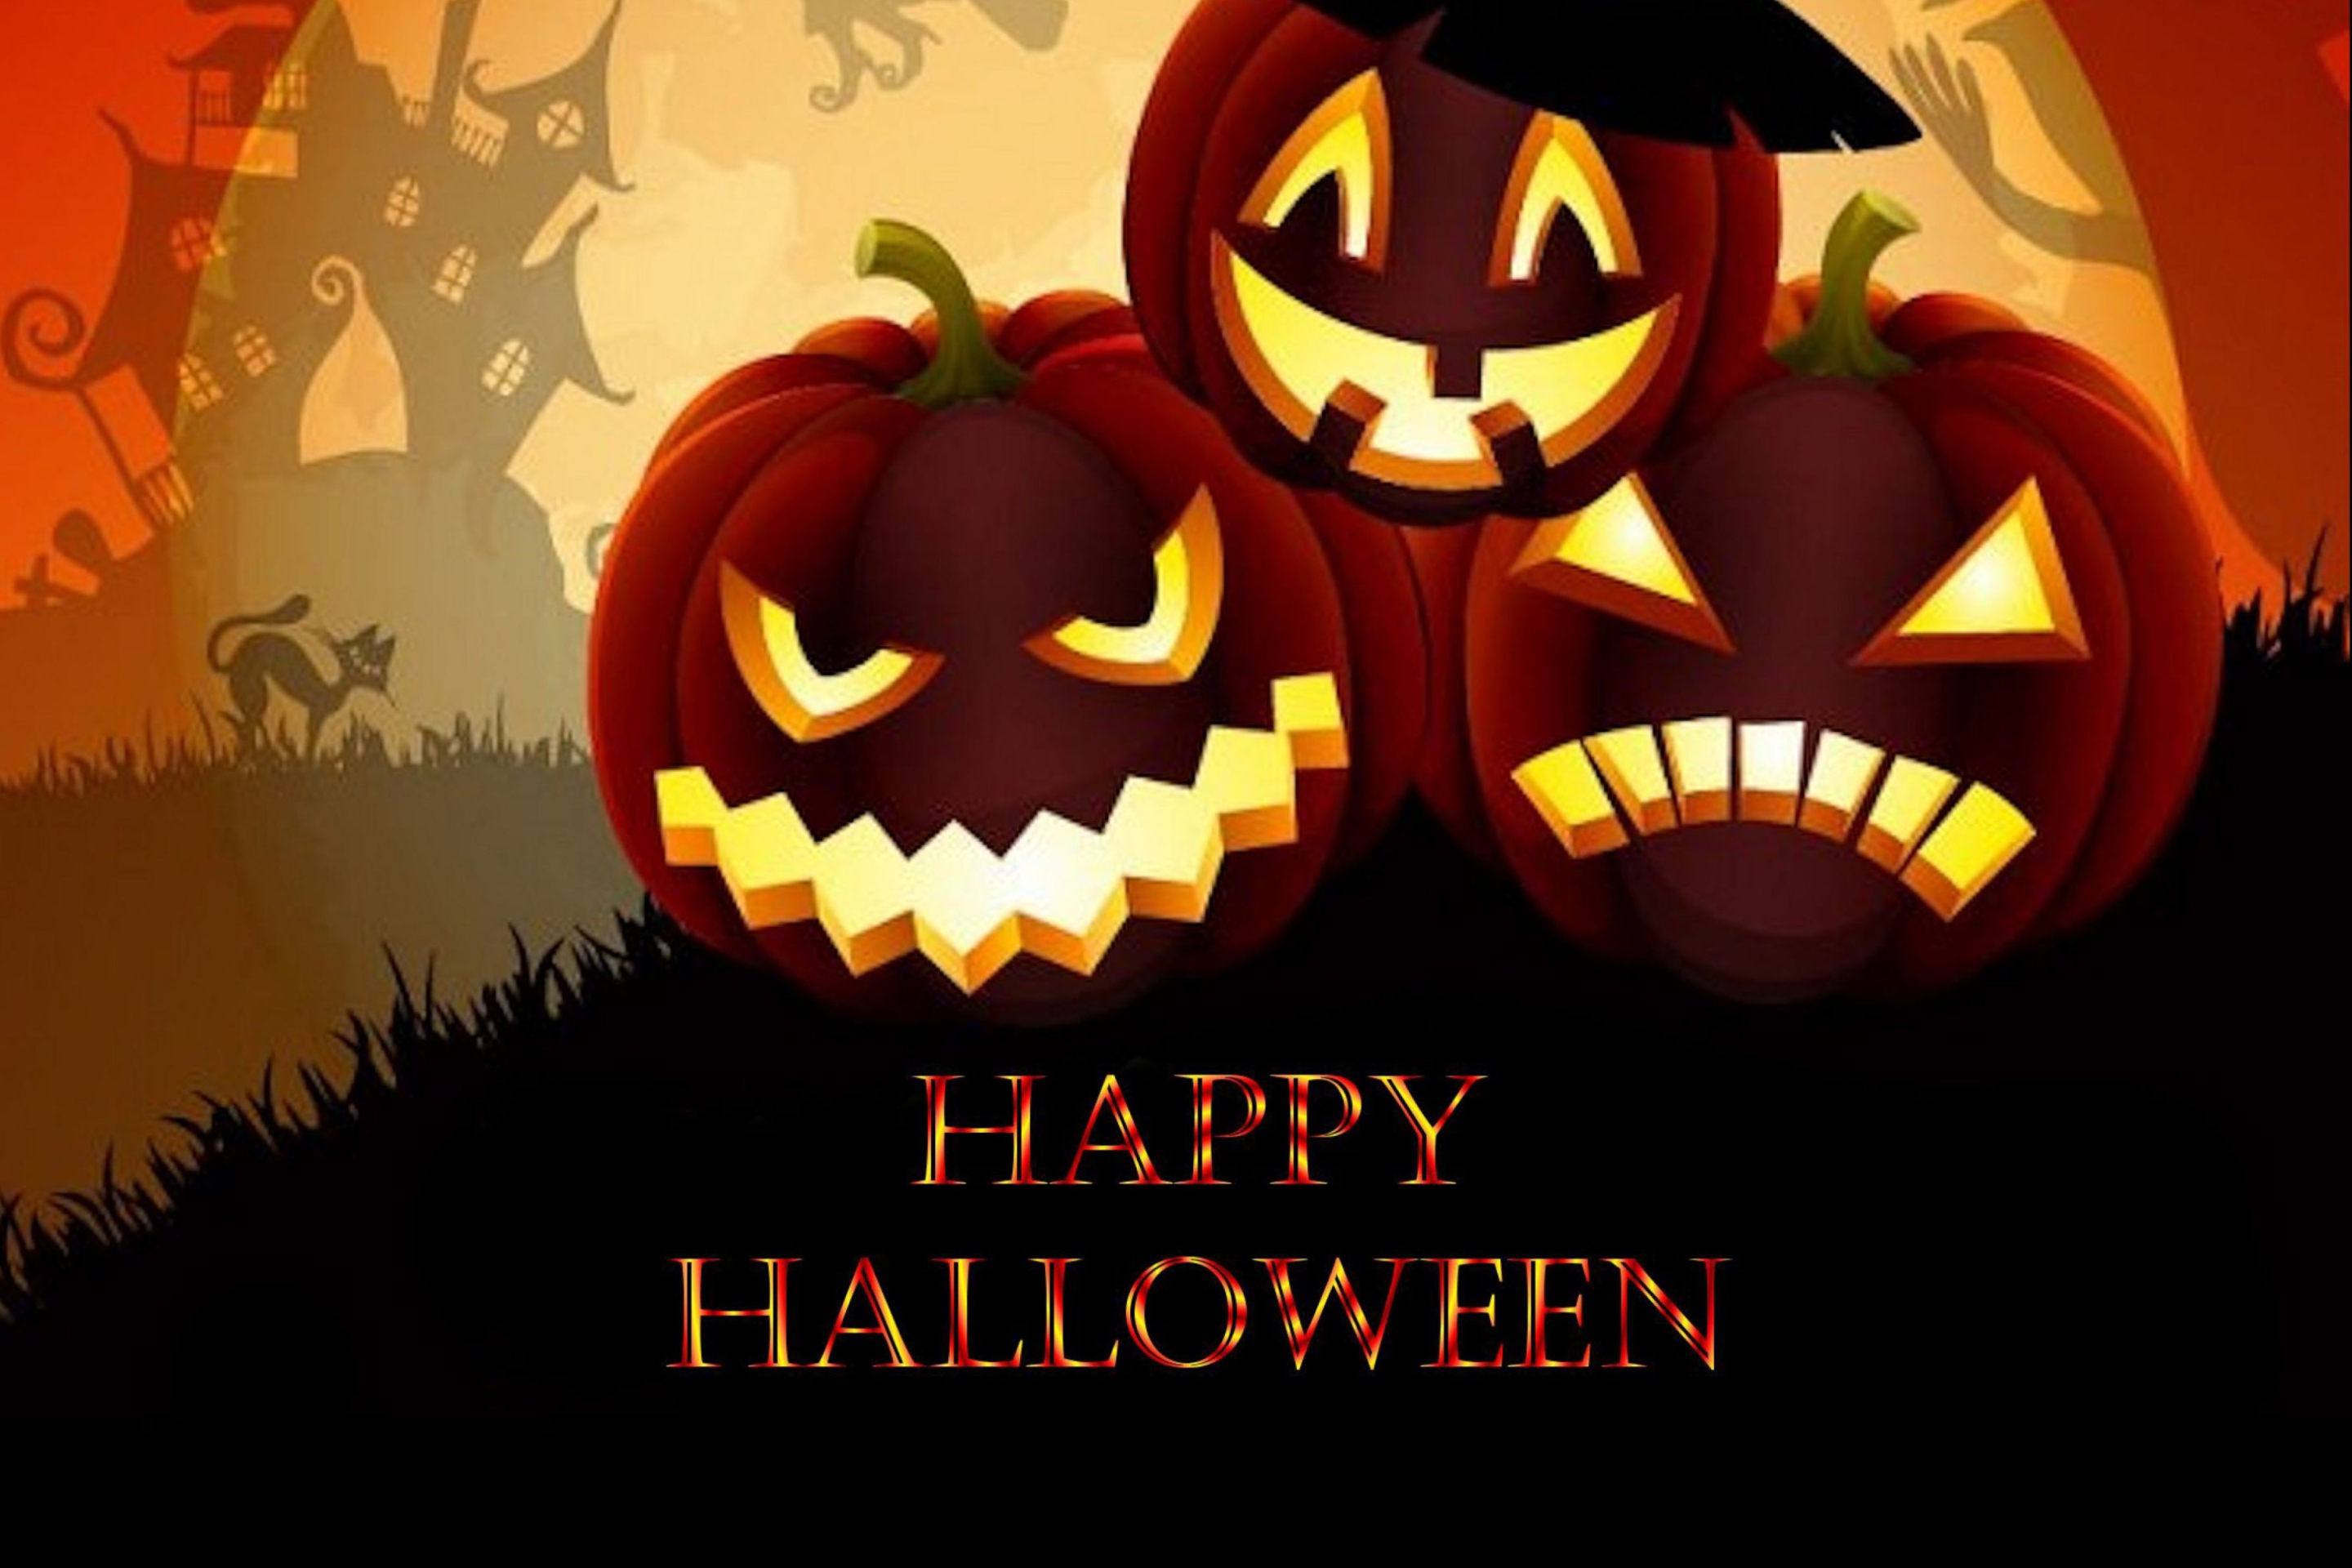 Открытка с праздником хэллоуин , 31 октября , открытки с тыквой. Картинка , открытка , открытки с международным праздником хэллоуин , на открытке изображена тыква хэллоуина  ,открытка с хэллоуином ,на хэллоуин скачать бесплатно